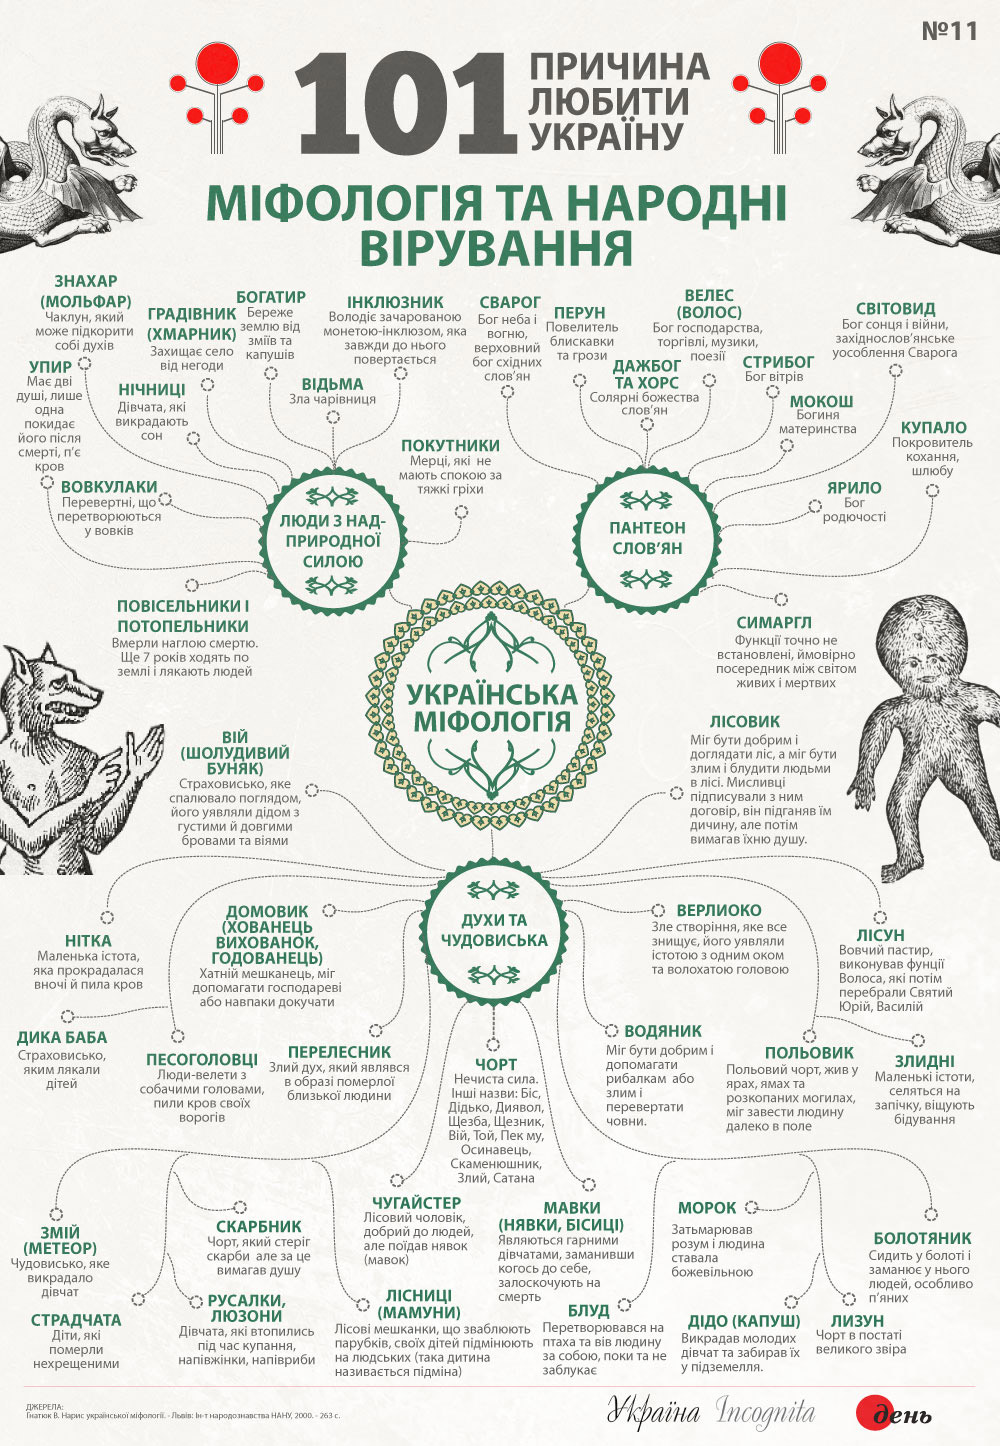 10 найвідоміших українських міфічних істот